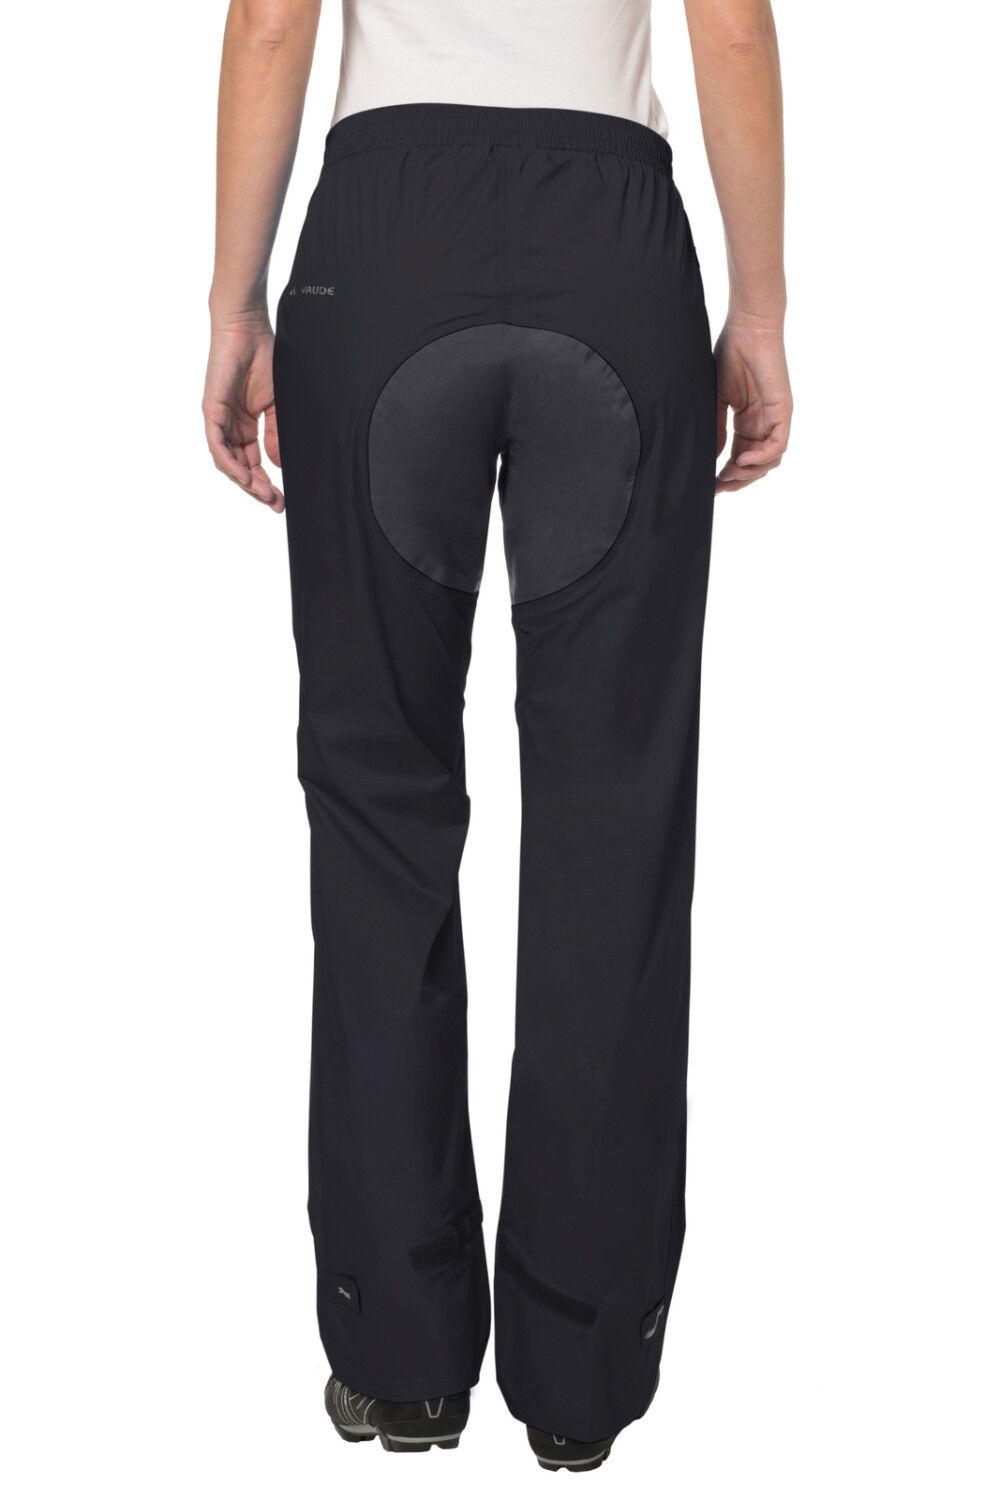 VAUDE Women's Drop Pants II (Bild 1)